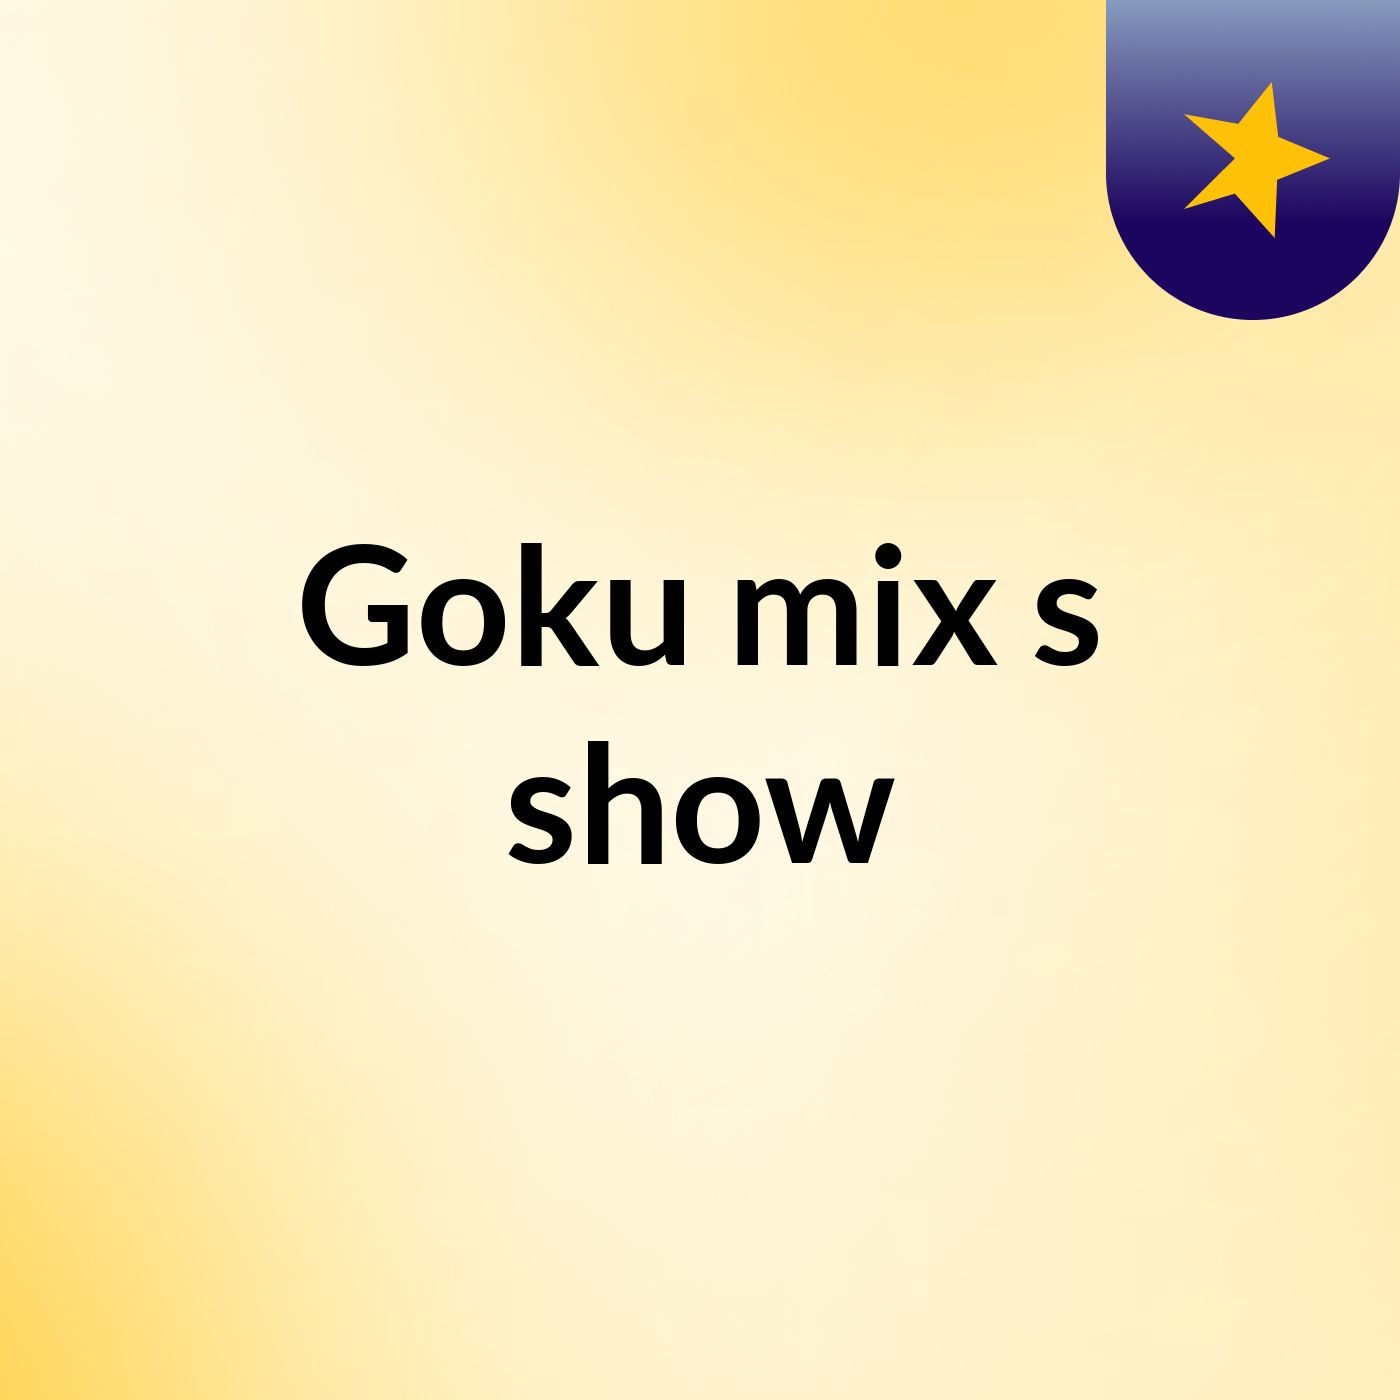 Goku mix's show